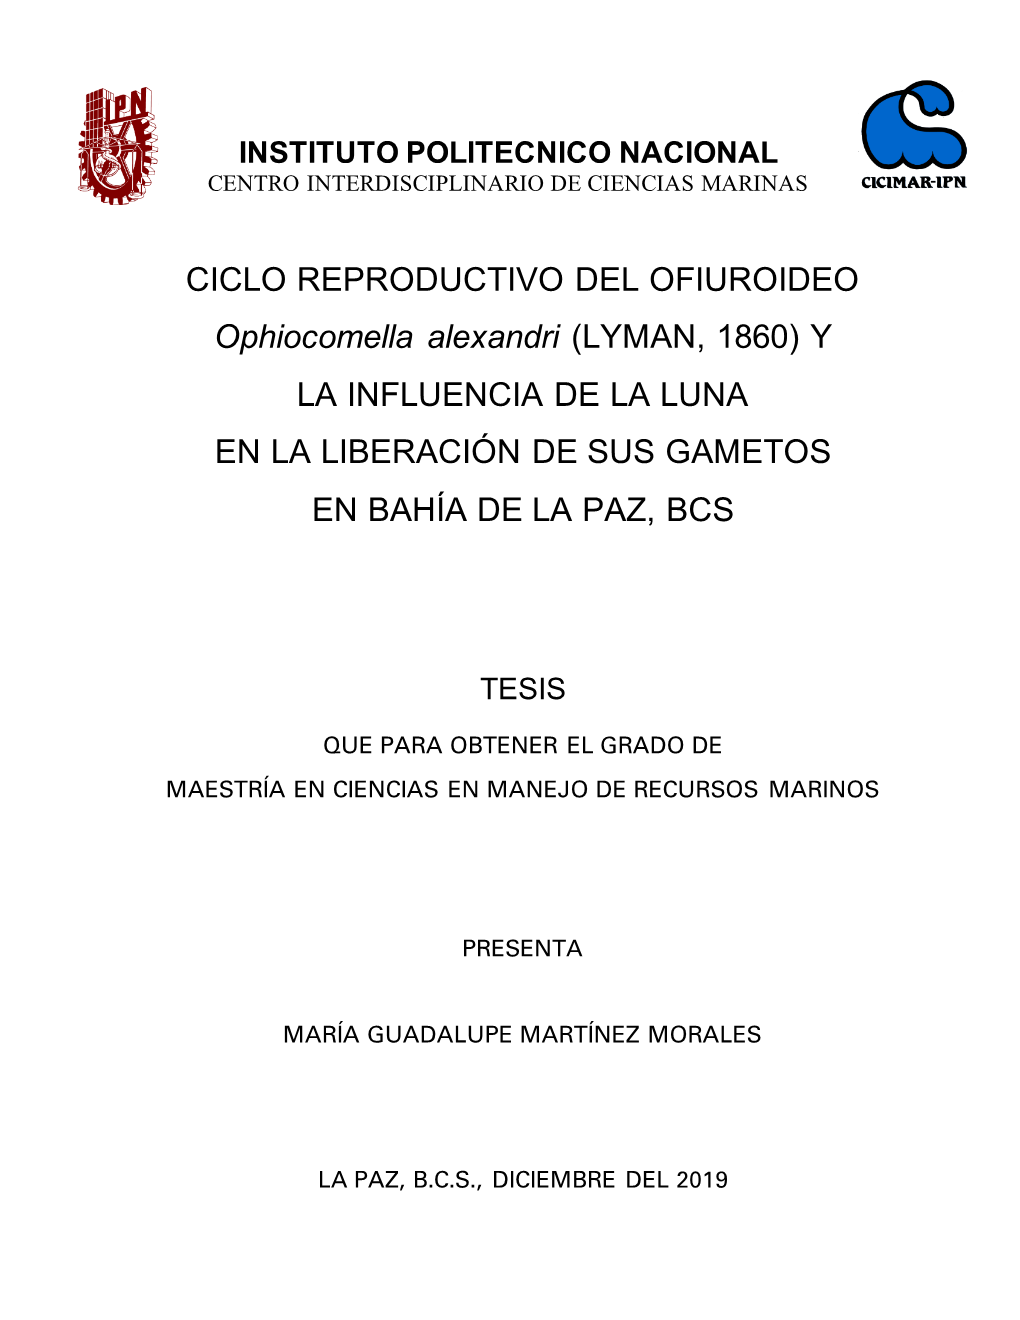 CICLO REPRODUCTIVO DEL OFIUROIDEO Ophiocomella Alexandri (LYMAN, 1860) Y LA INFLUENCIA DE LA LUNA EN LA LIBERACIÓN DE SUS GAMETOS